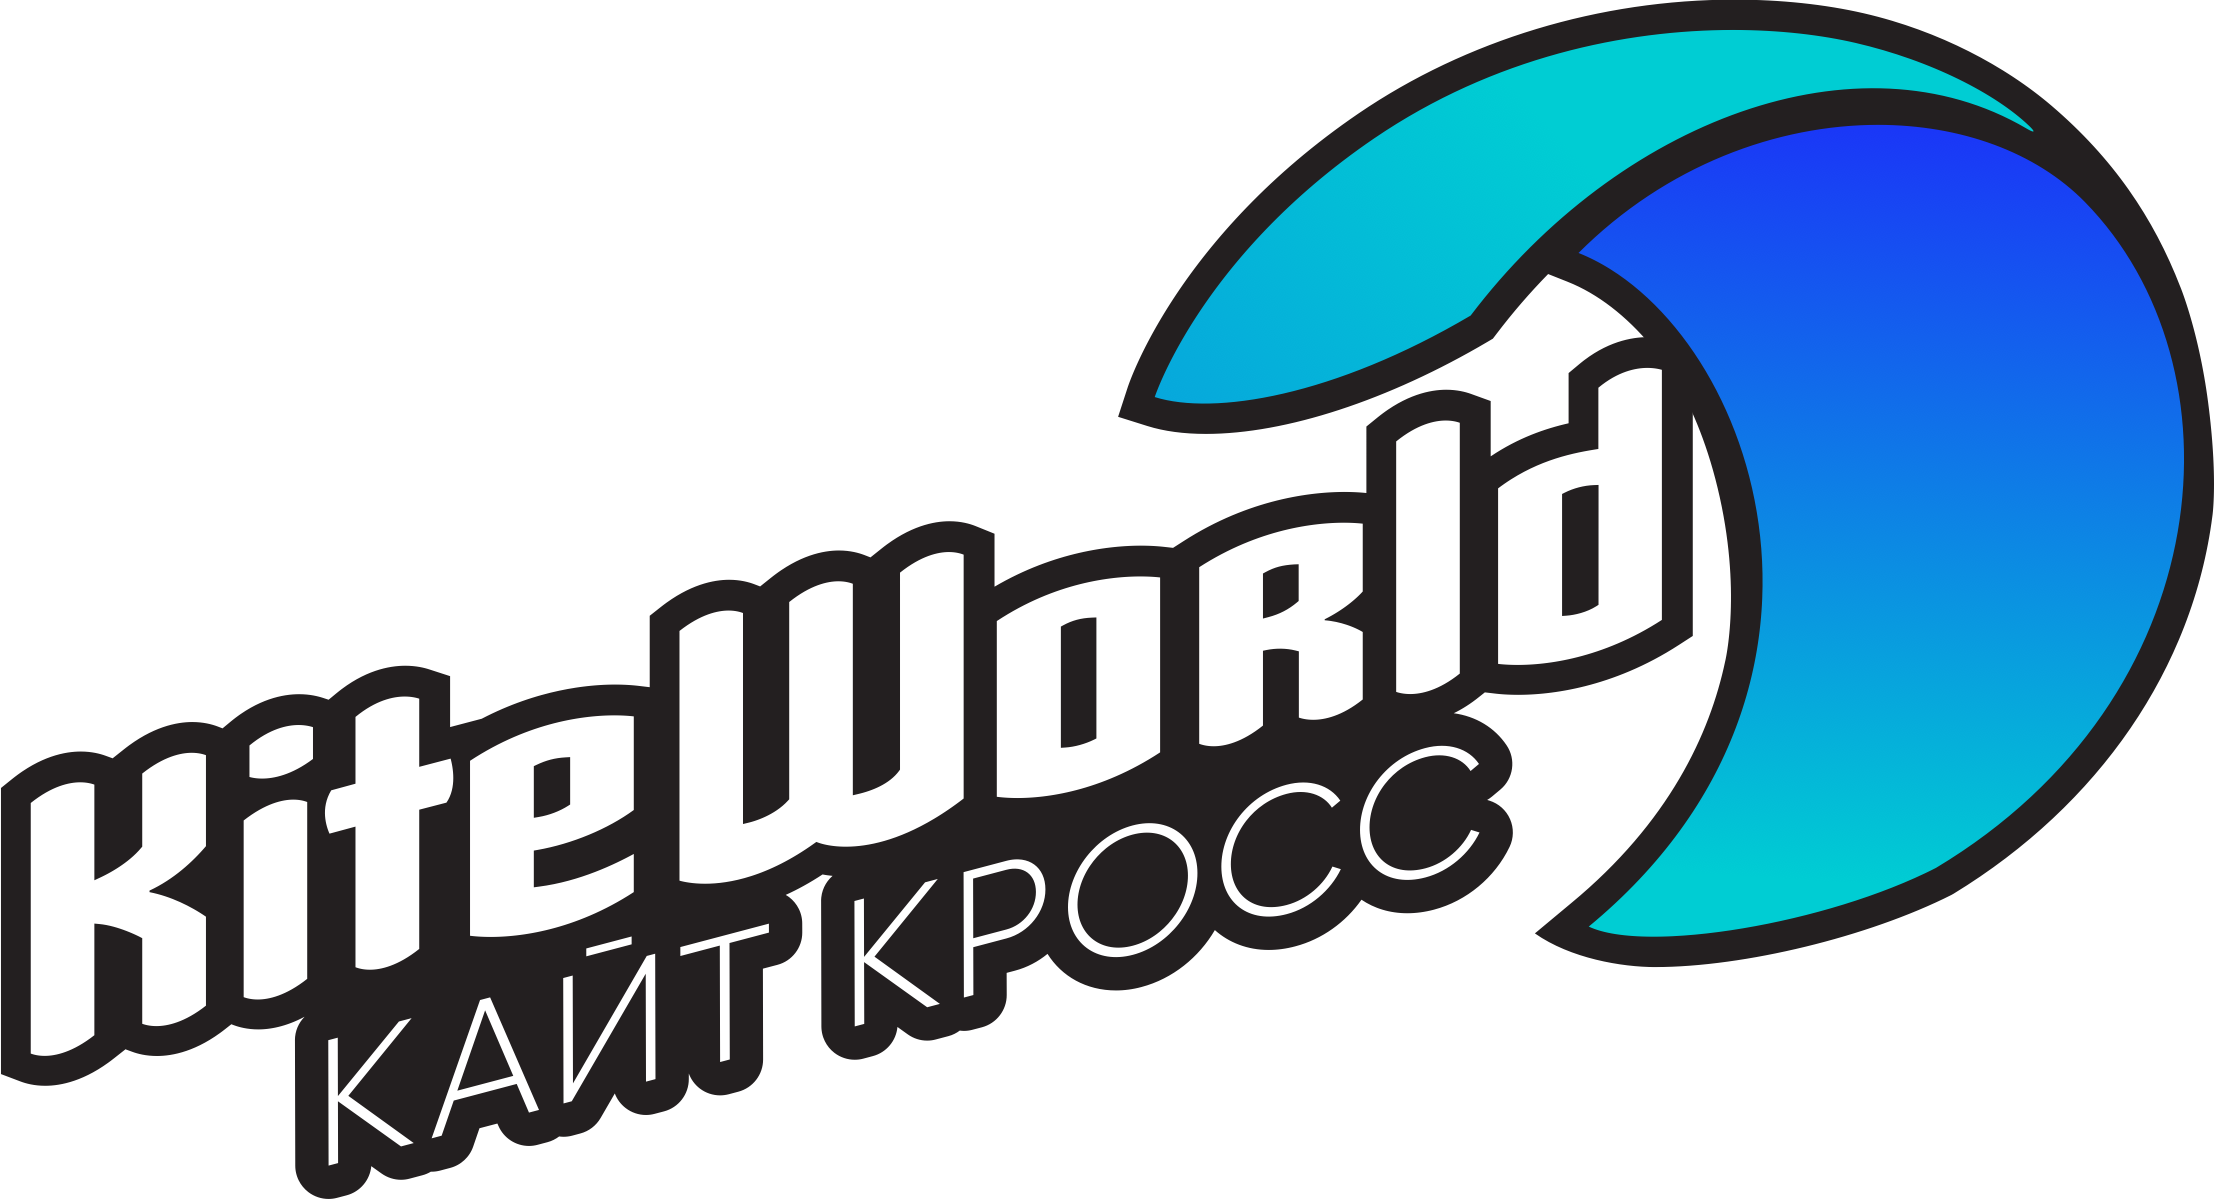 КАЙТ КРОСС KiteWorld - это гонка по пересечённой местности, где каждый участник выбирает сам свой маршрут